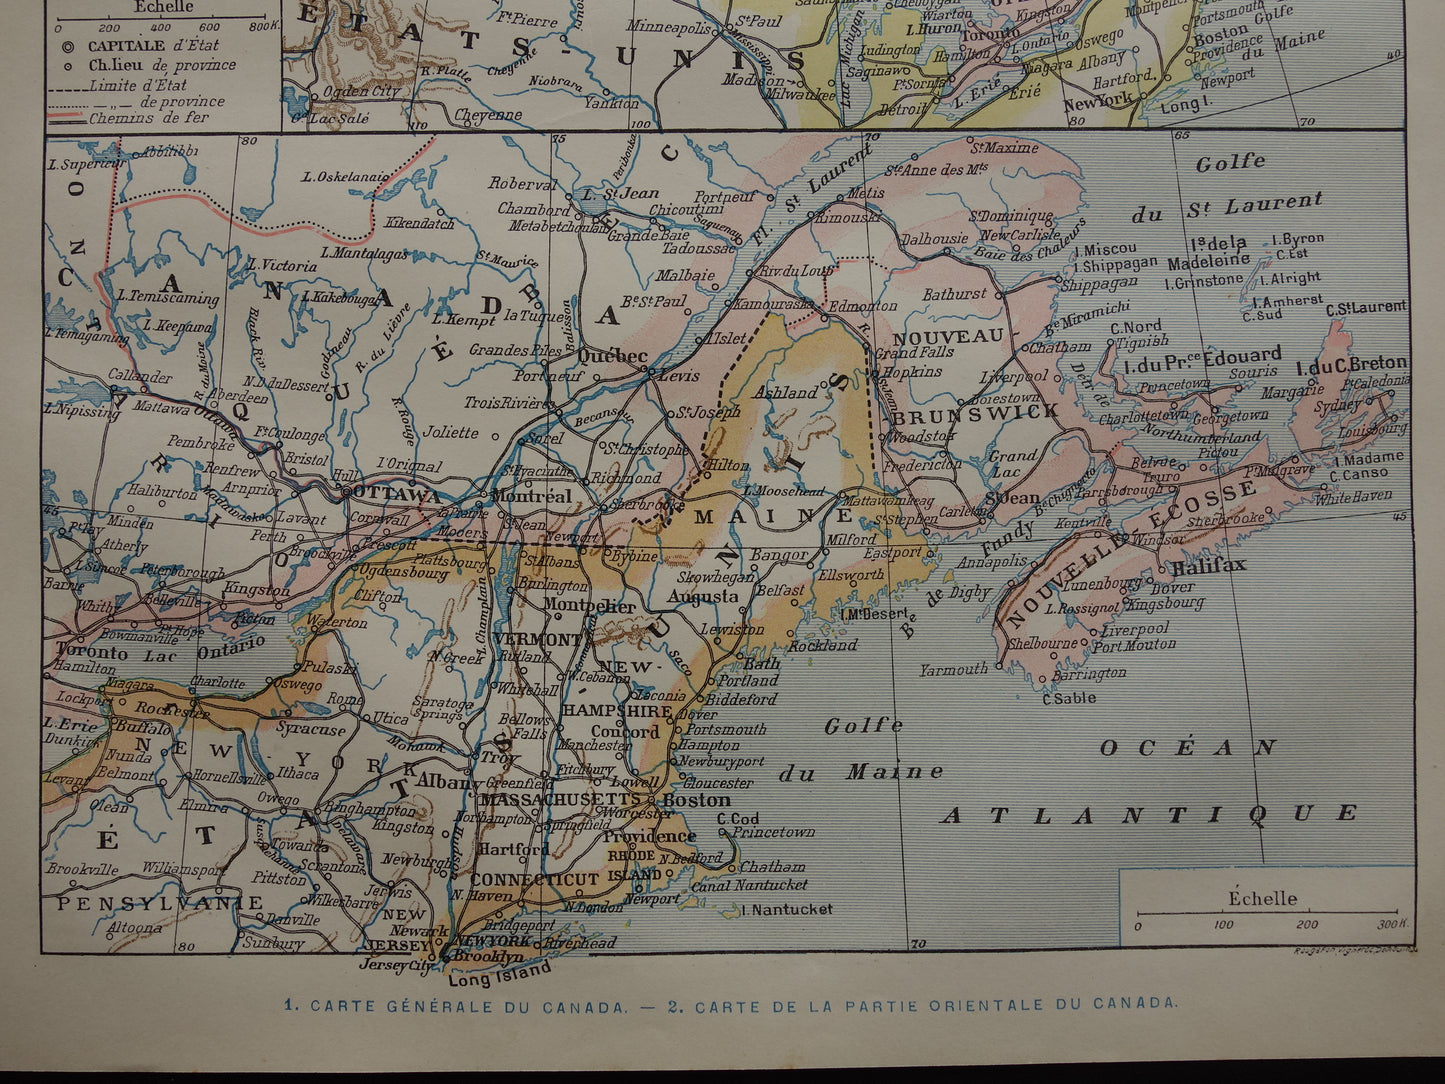 CANADA Oude landkaart van Canada uit 1902 Originele antieke kaart vintage print